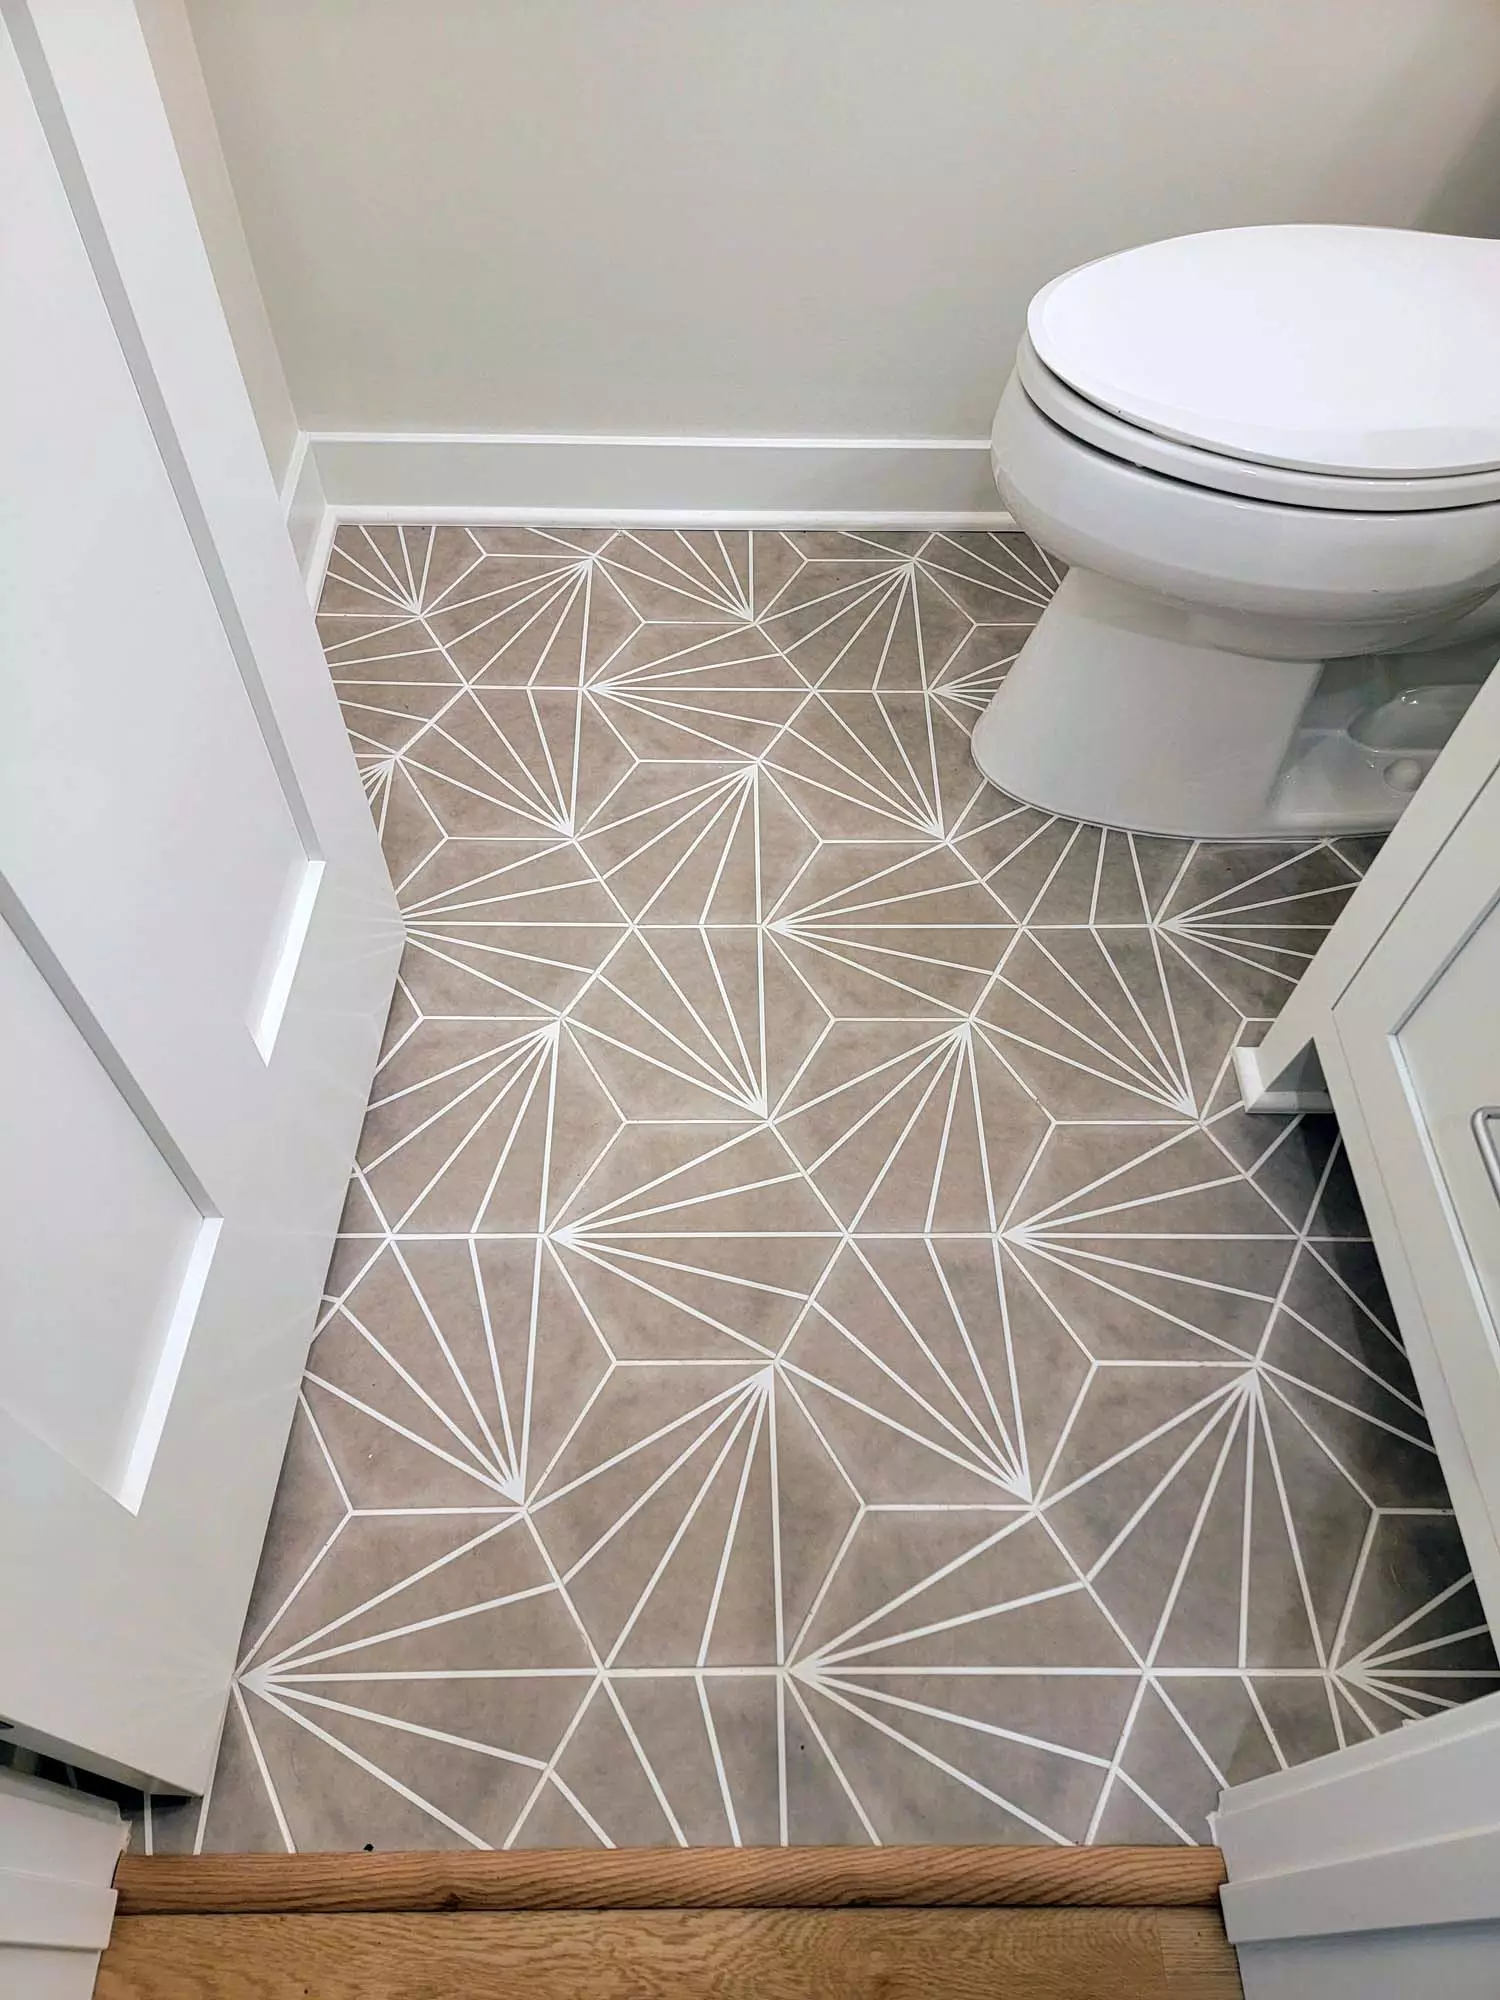 Unique tile layout & pattern